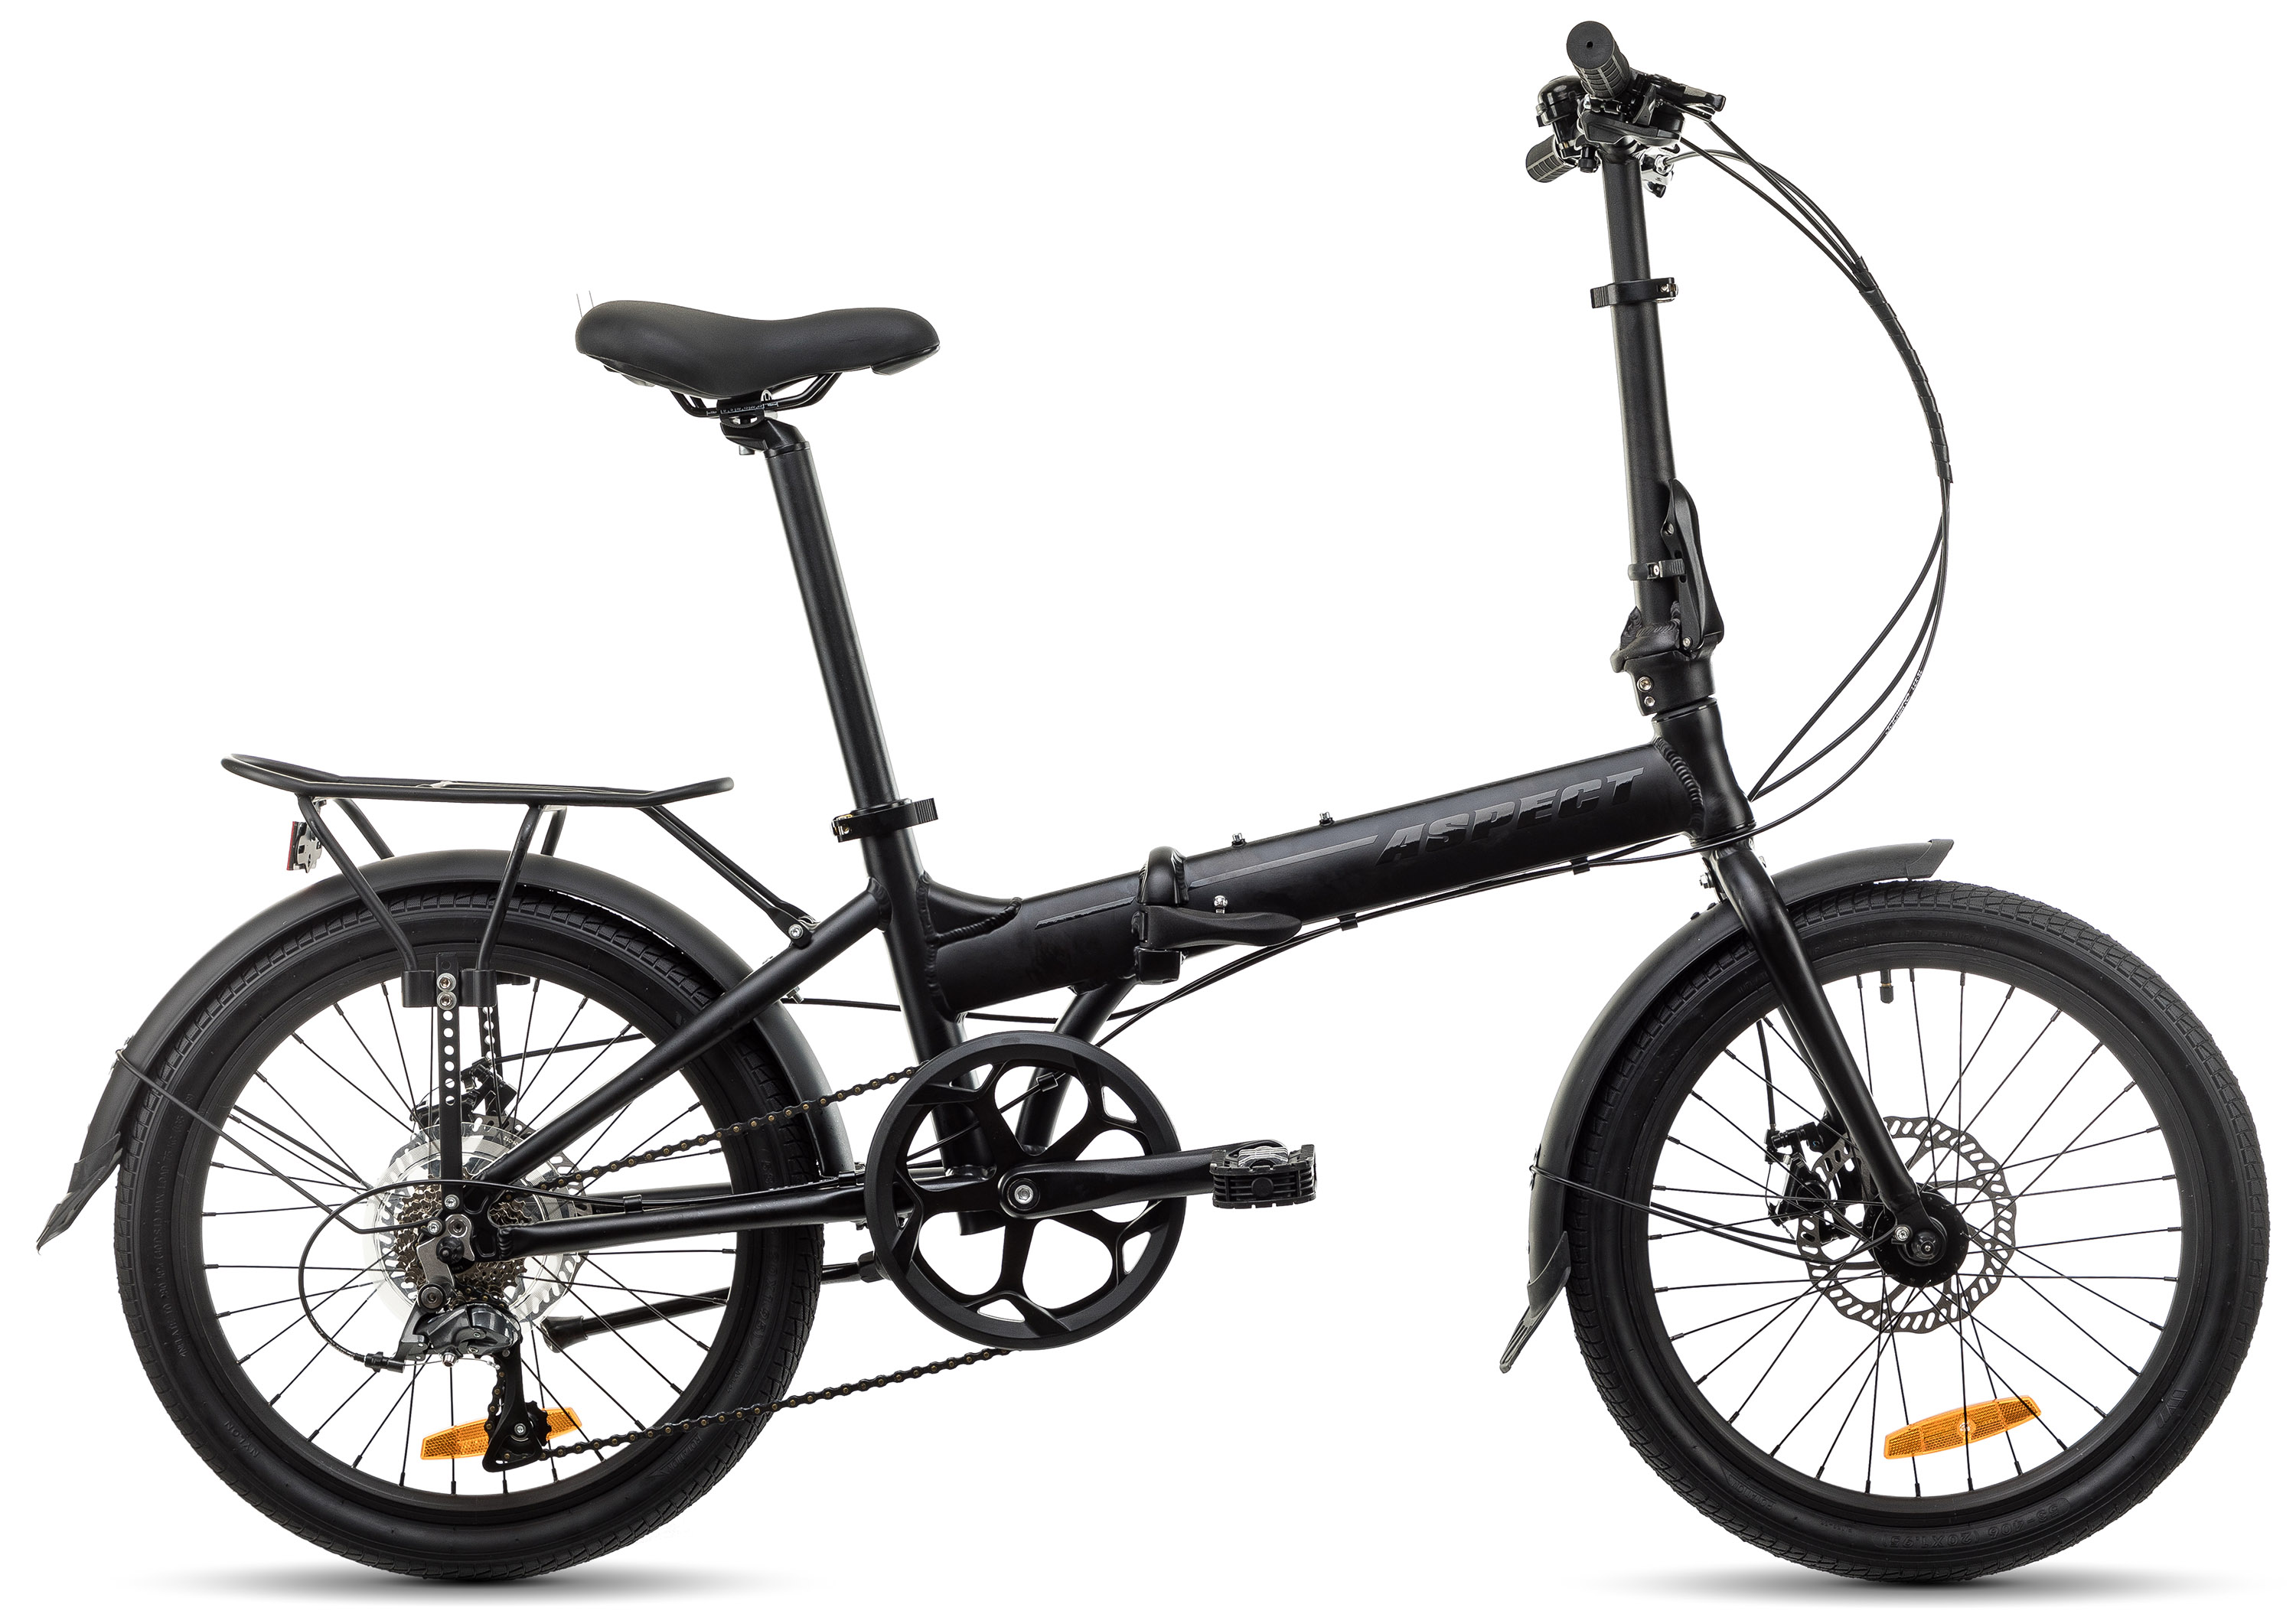  Отзывы о Складном велосипеде Aspect Borneo 8 (2021) 2021